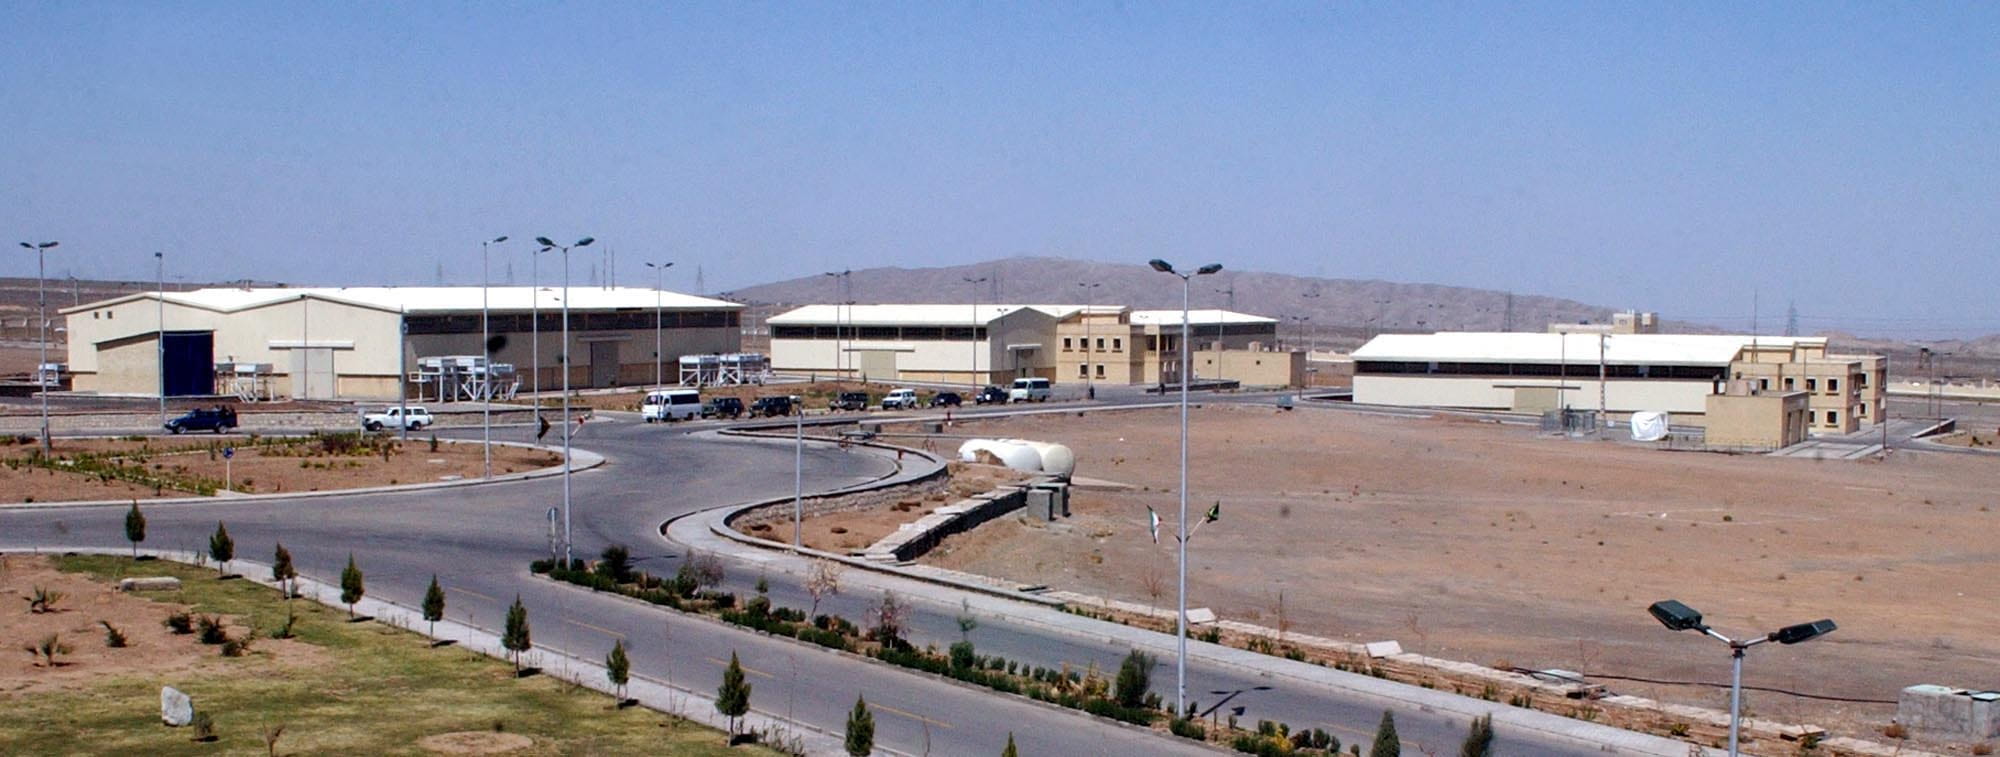 Los edificios de la instalación de enriquecimiento de uranio de Natanz se muestran a unos 322 km al sur de la capital, Teherán, Irán, el 30 de marzo de 2005. (AP Photo/Vahid Salemi)